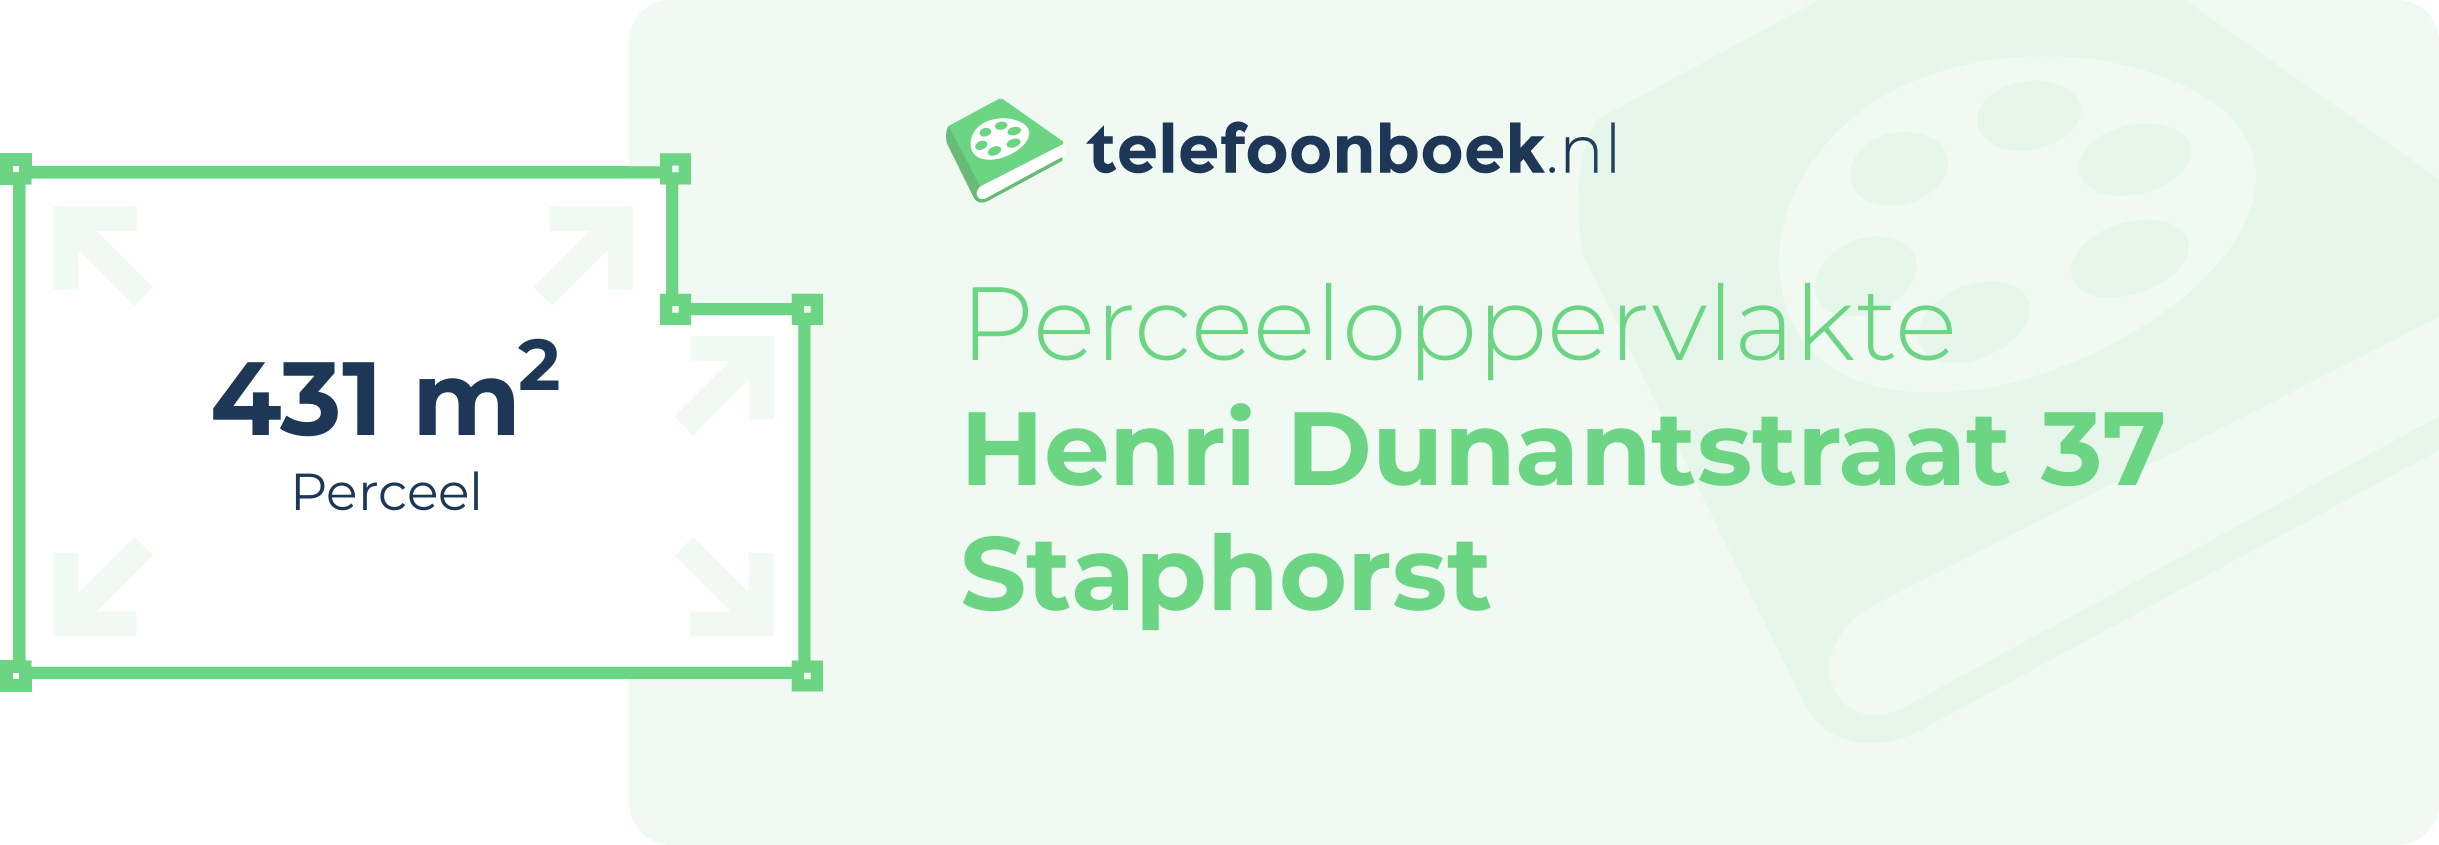 Perceeloppervlakte Henri Dunantstraat 37 Staphorst